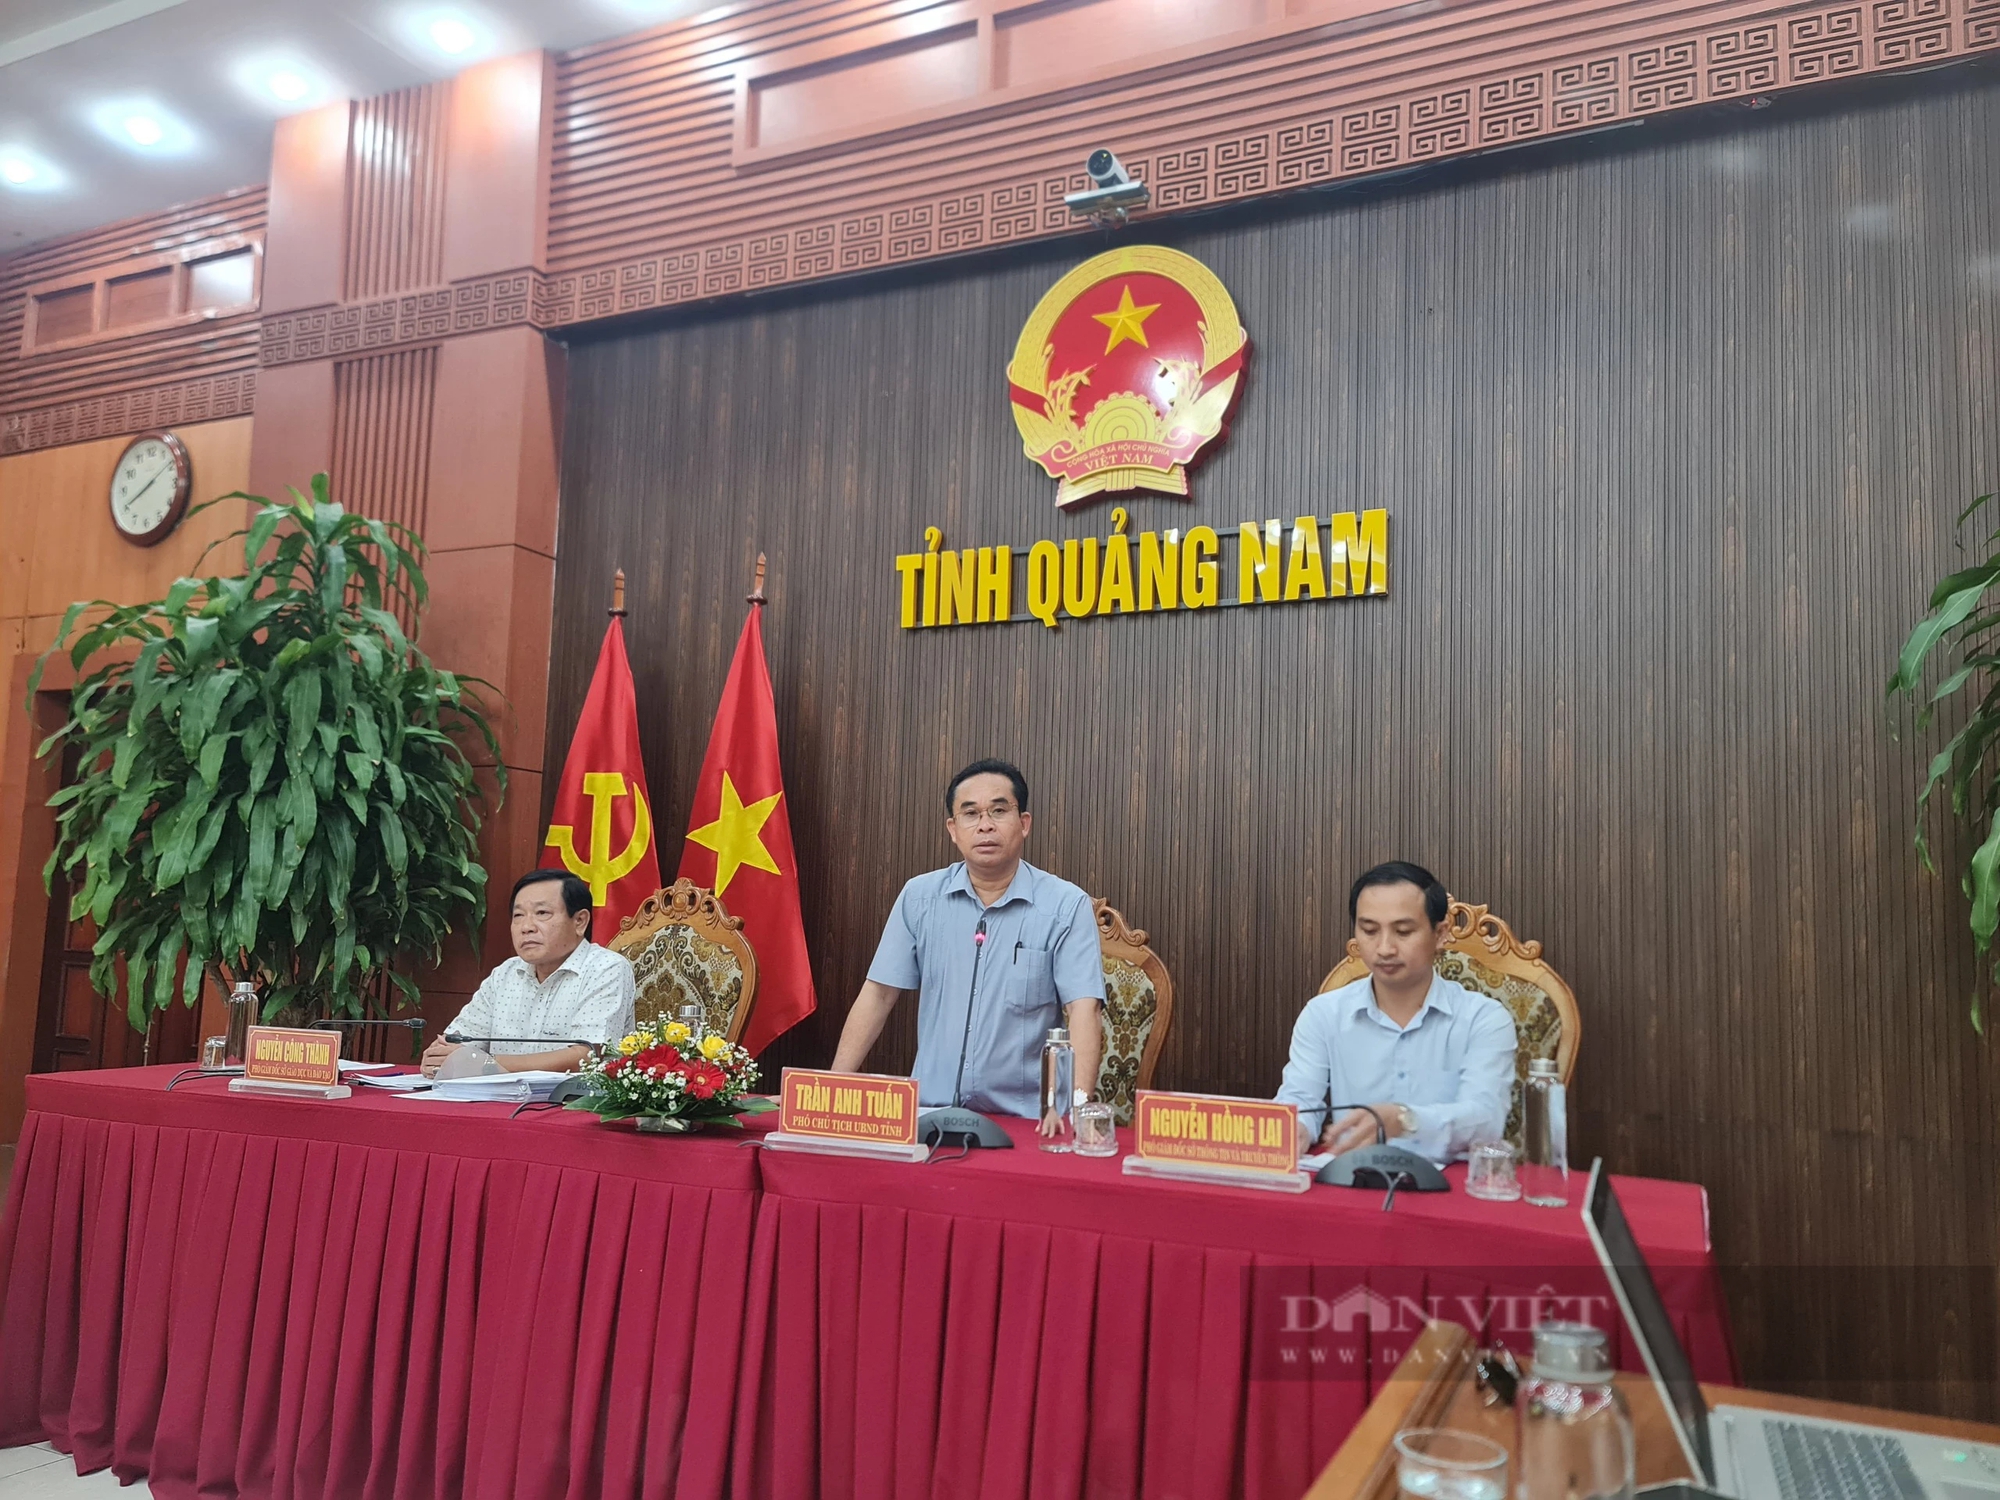 VĐV các tỉnh, thành về dự thi Hội khỏe Phù Đổng toàn quốc tại Quảng Nam tự lo kinh phí, chỗ ăn ở- Ảnh 1.